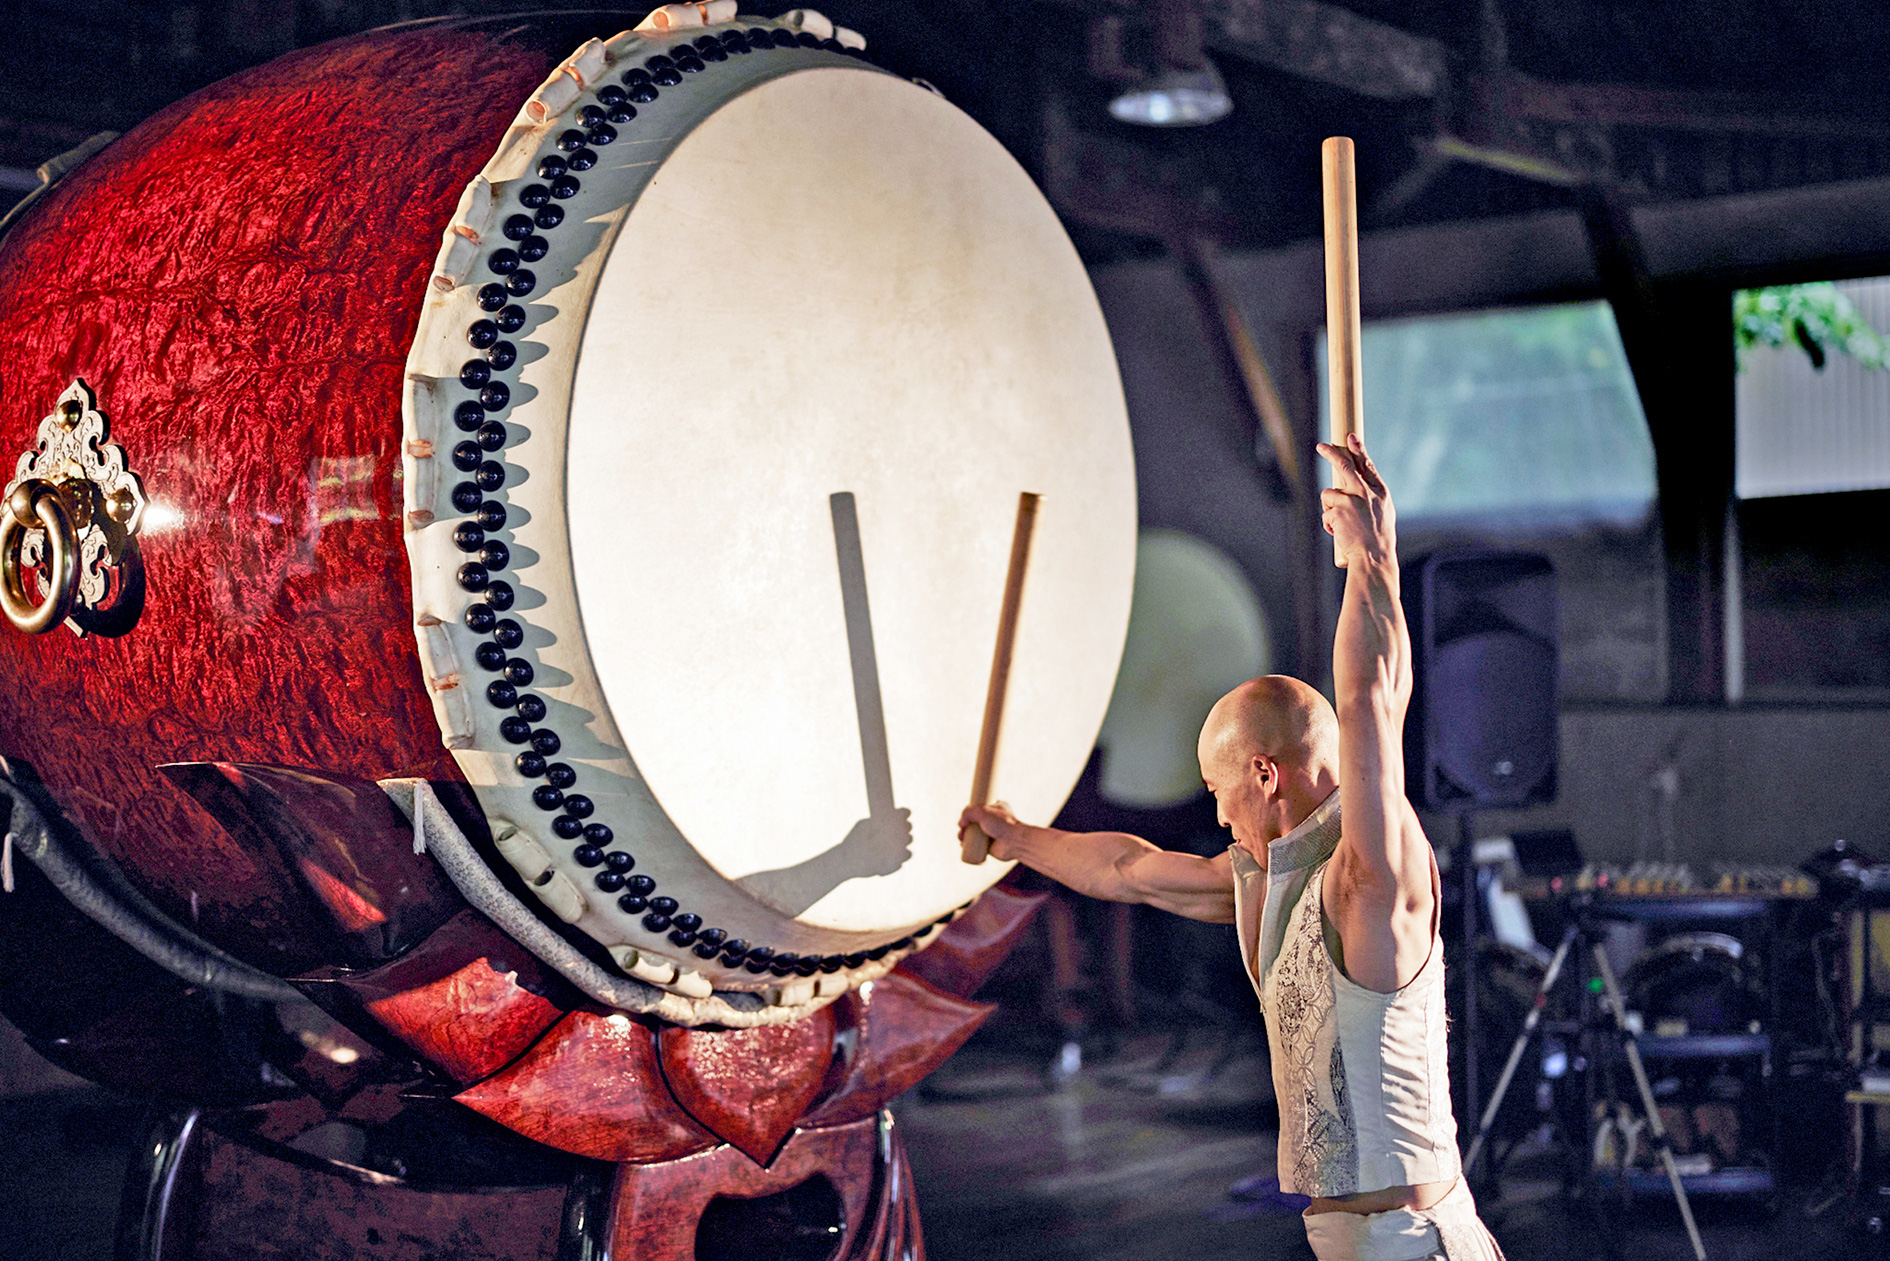 Кенсаку Сато из Японии демонстрирует свое мастерство игры на барабанах тайко. Фото: Косидзука Мицуки